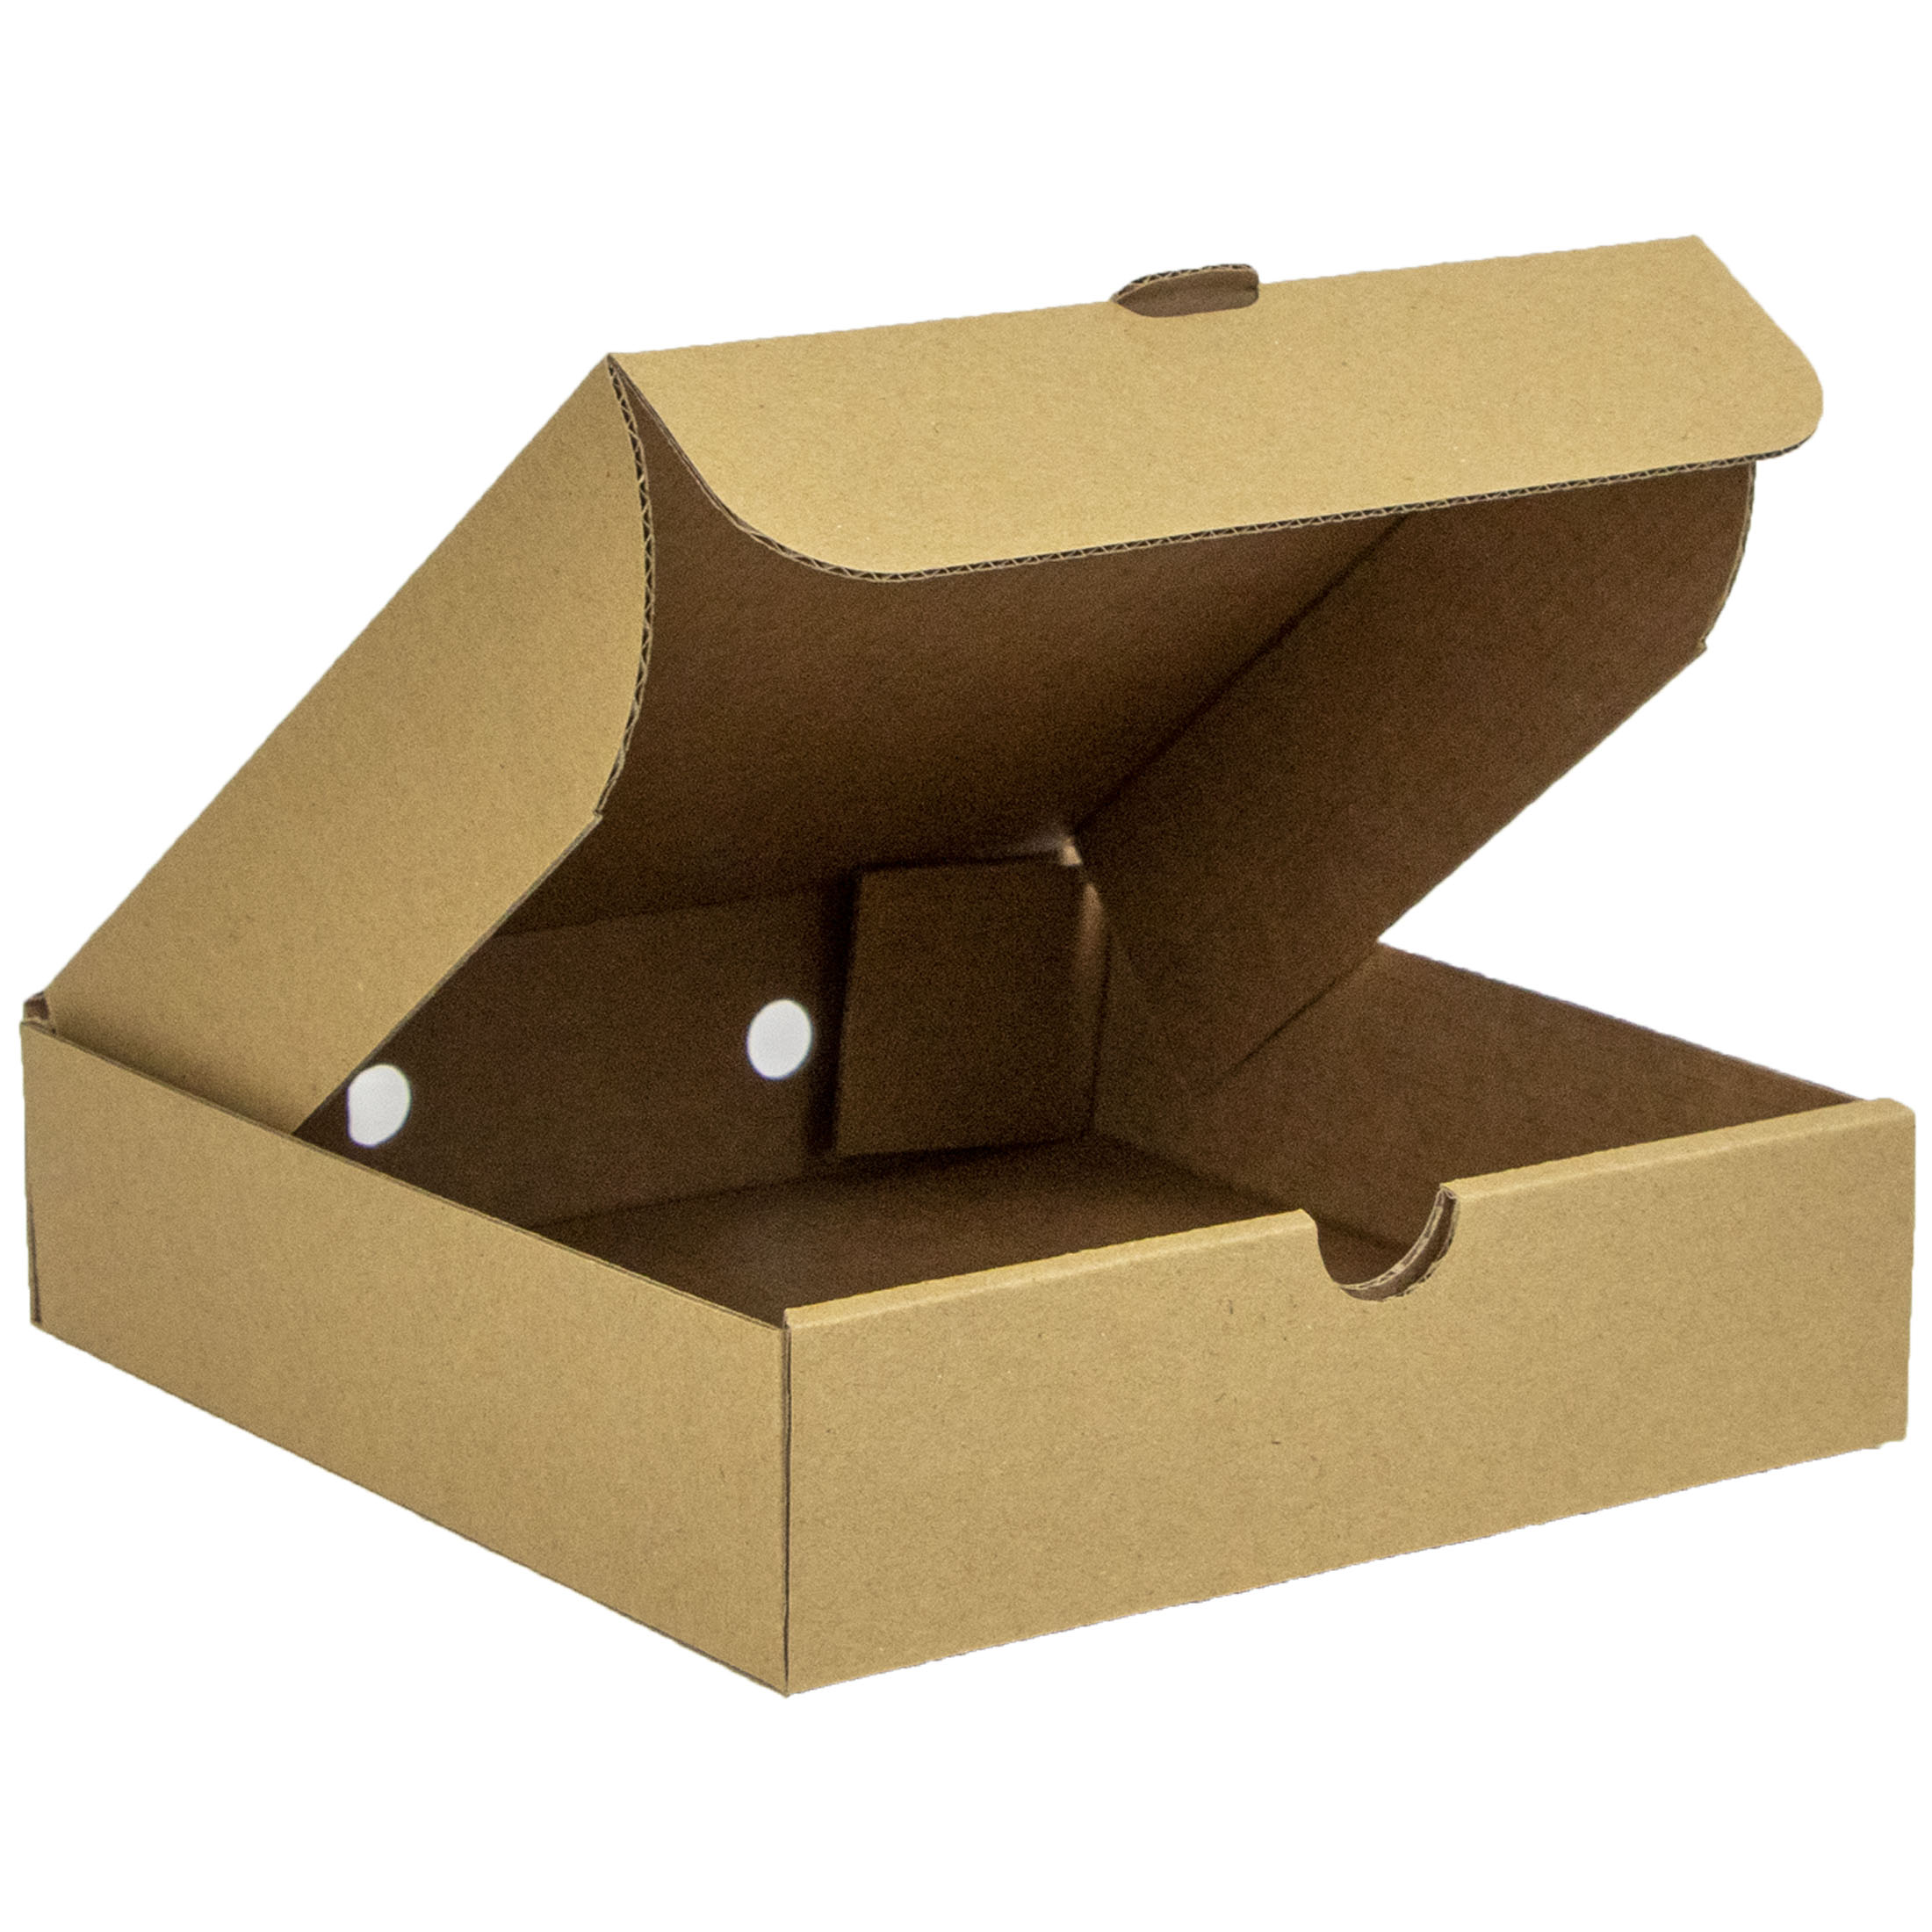 Buy 14" Food Grade Pizza Box Online | Takeaway Packaging